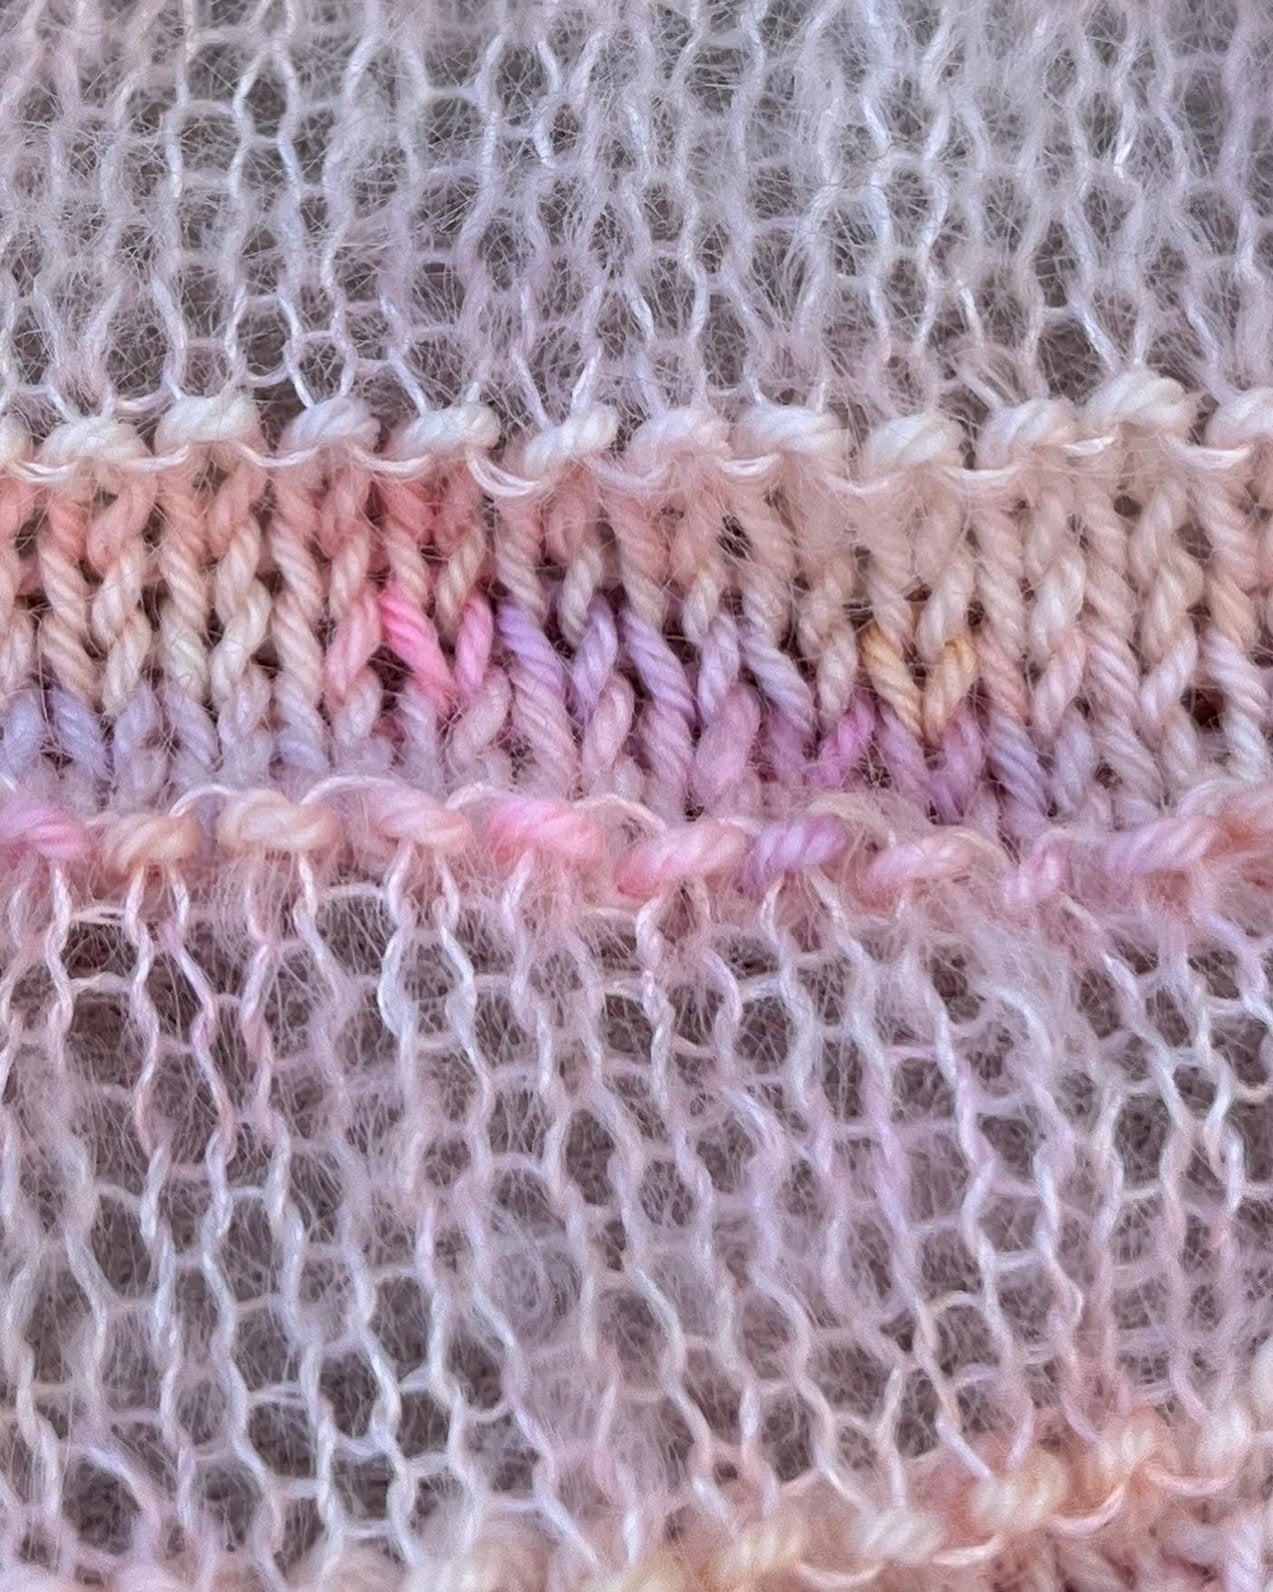 Straight Up Sweater English Popknit knitting pattern